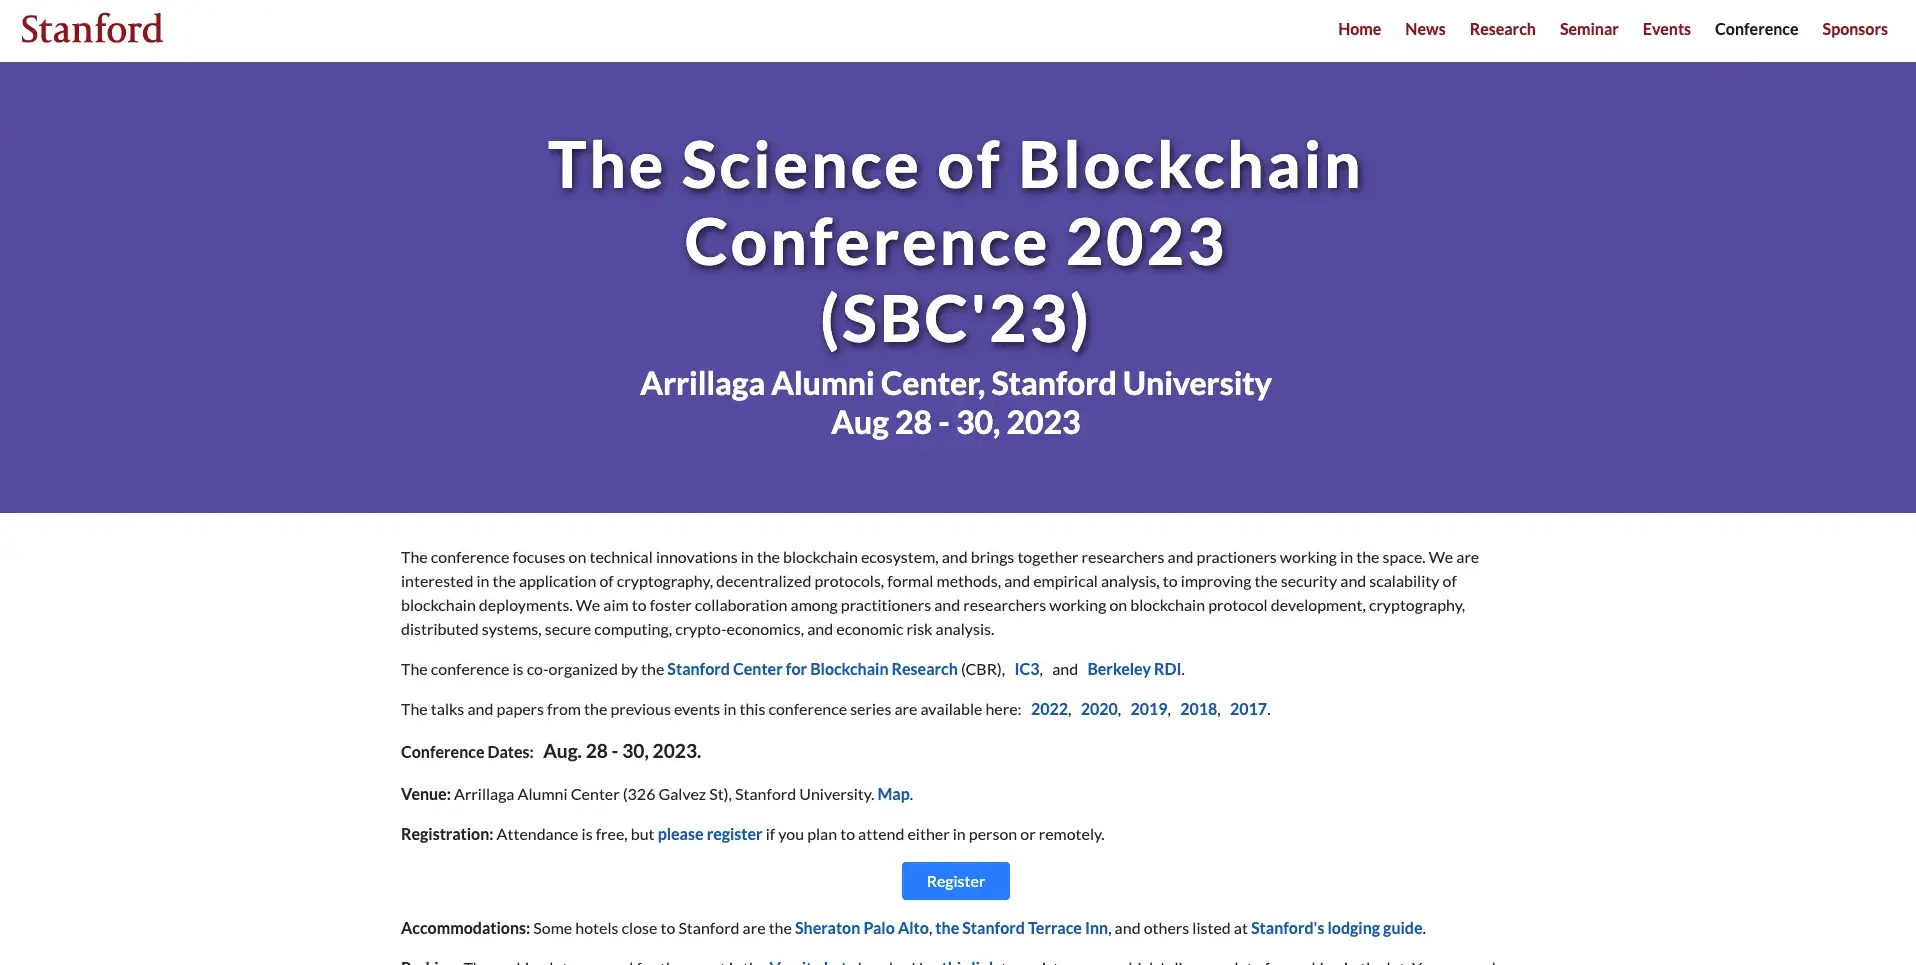 5. La conferenza sulla scienza della blockchain